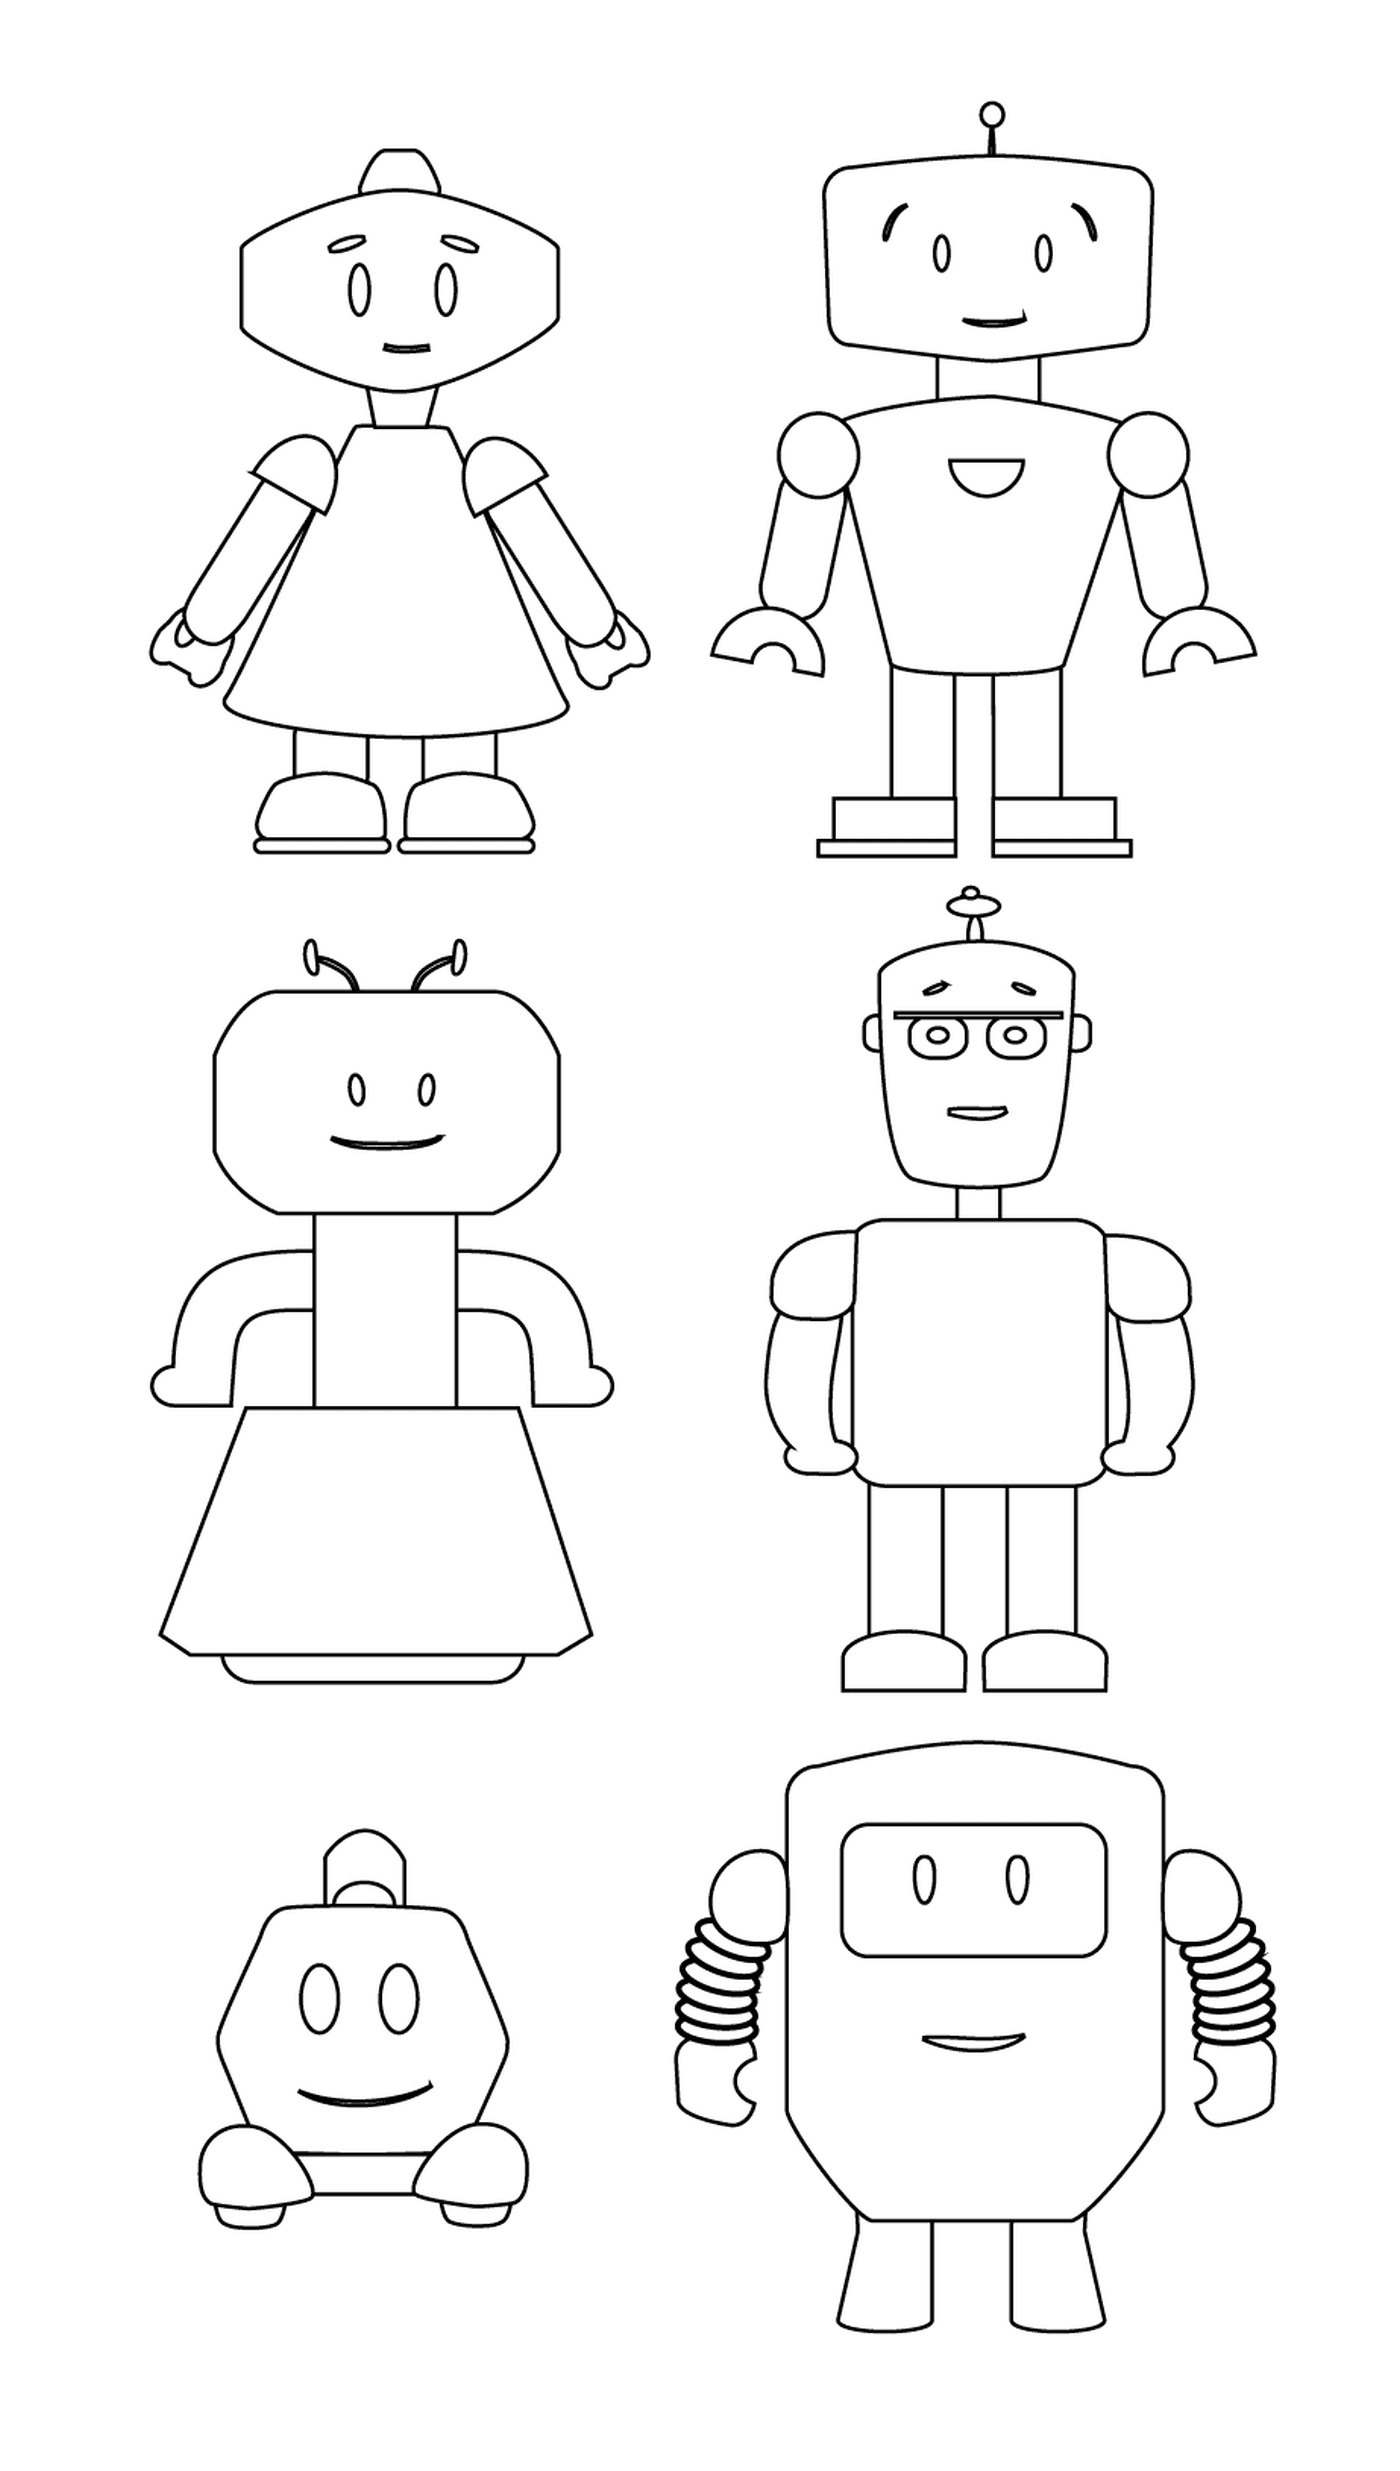  可爱机器人家庭 